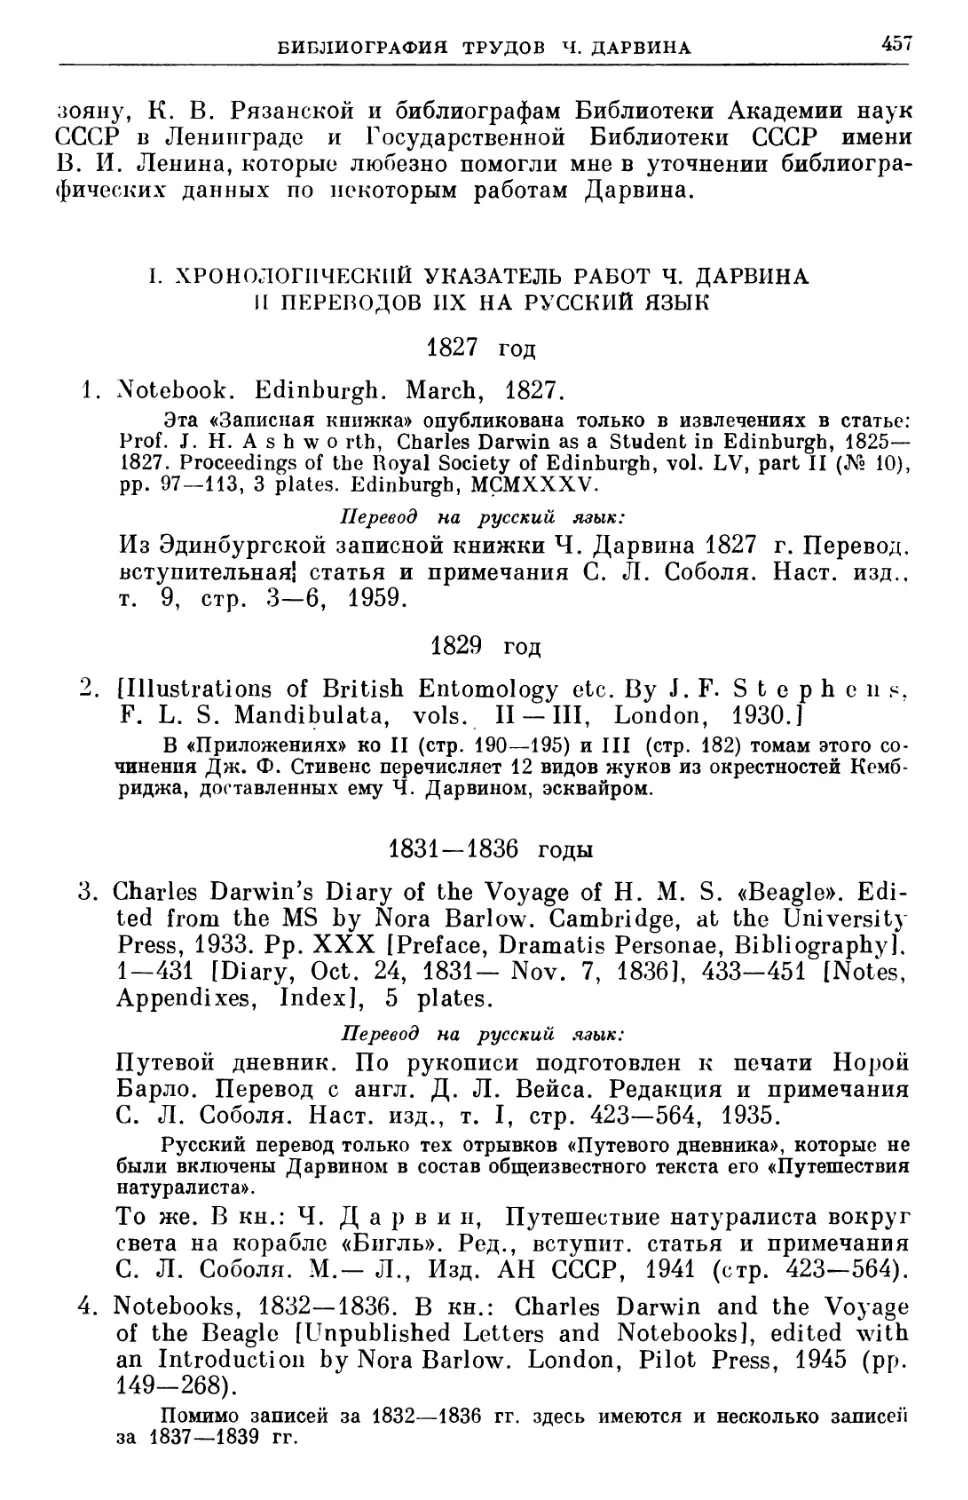 I. Хронологический указатель работ Ч. Дарвина и переводов их на русский язык